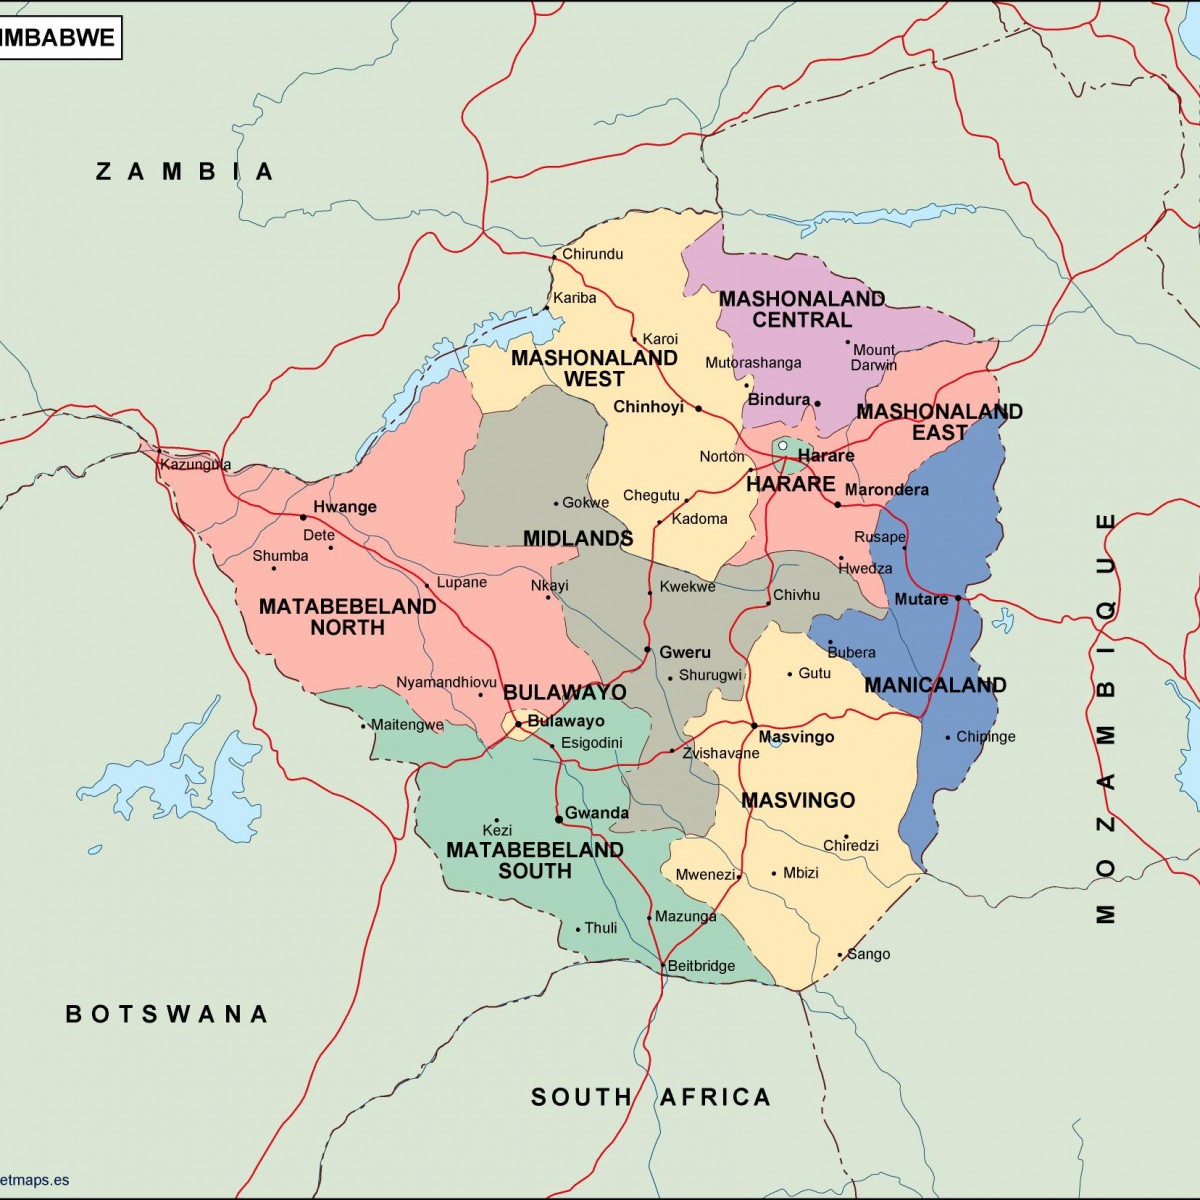 zimbabwe political map. Vector Eps maps. Eps Illustrator ...